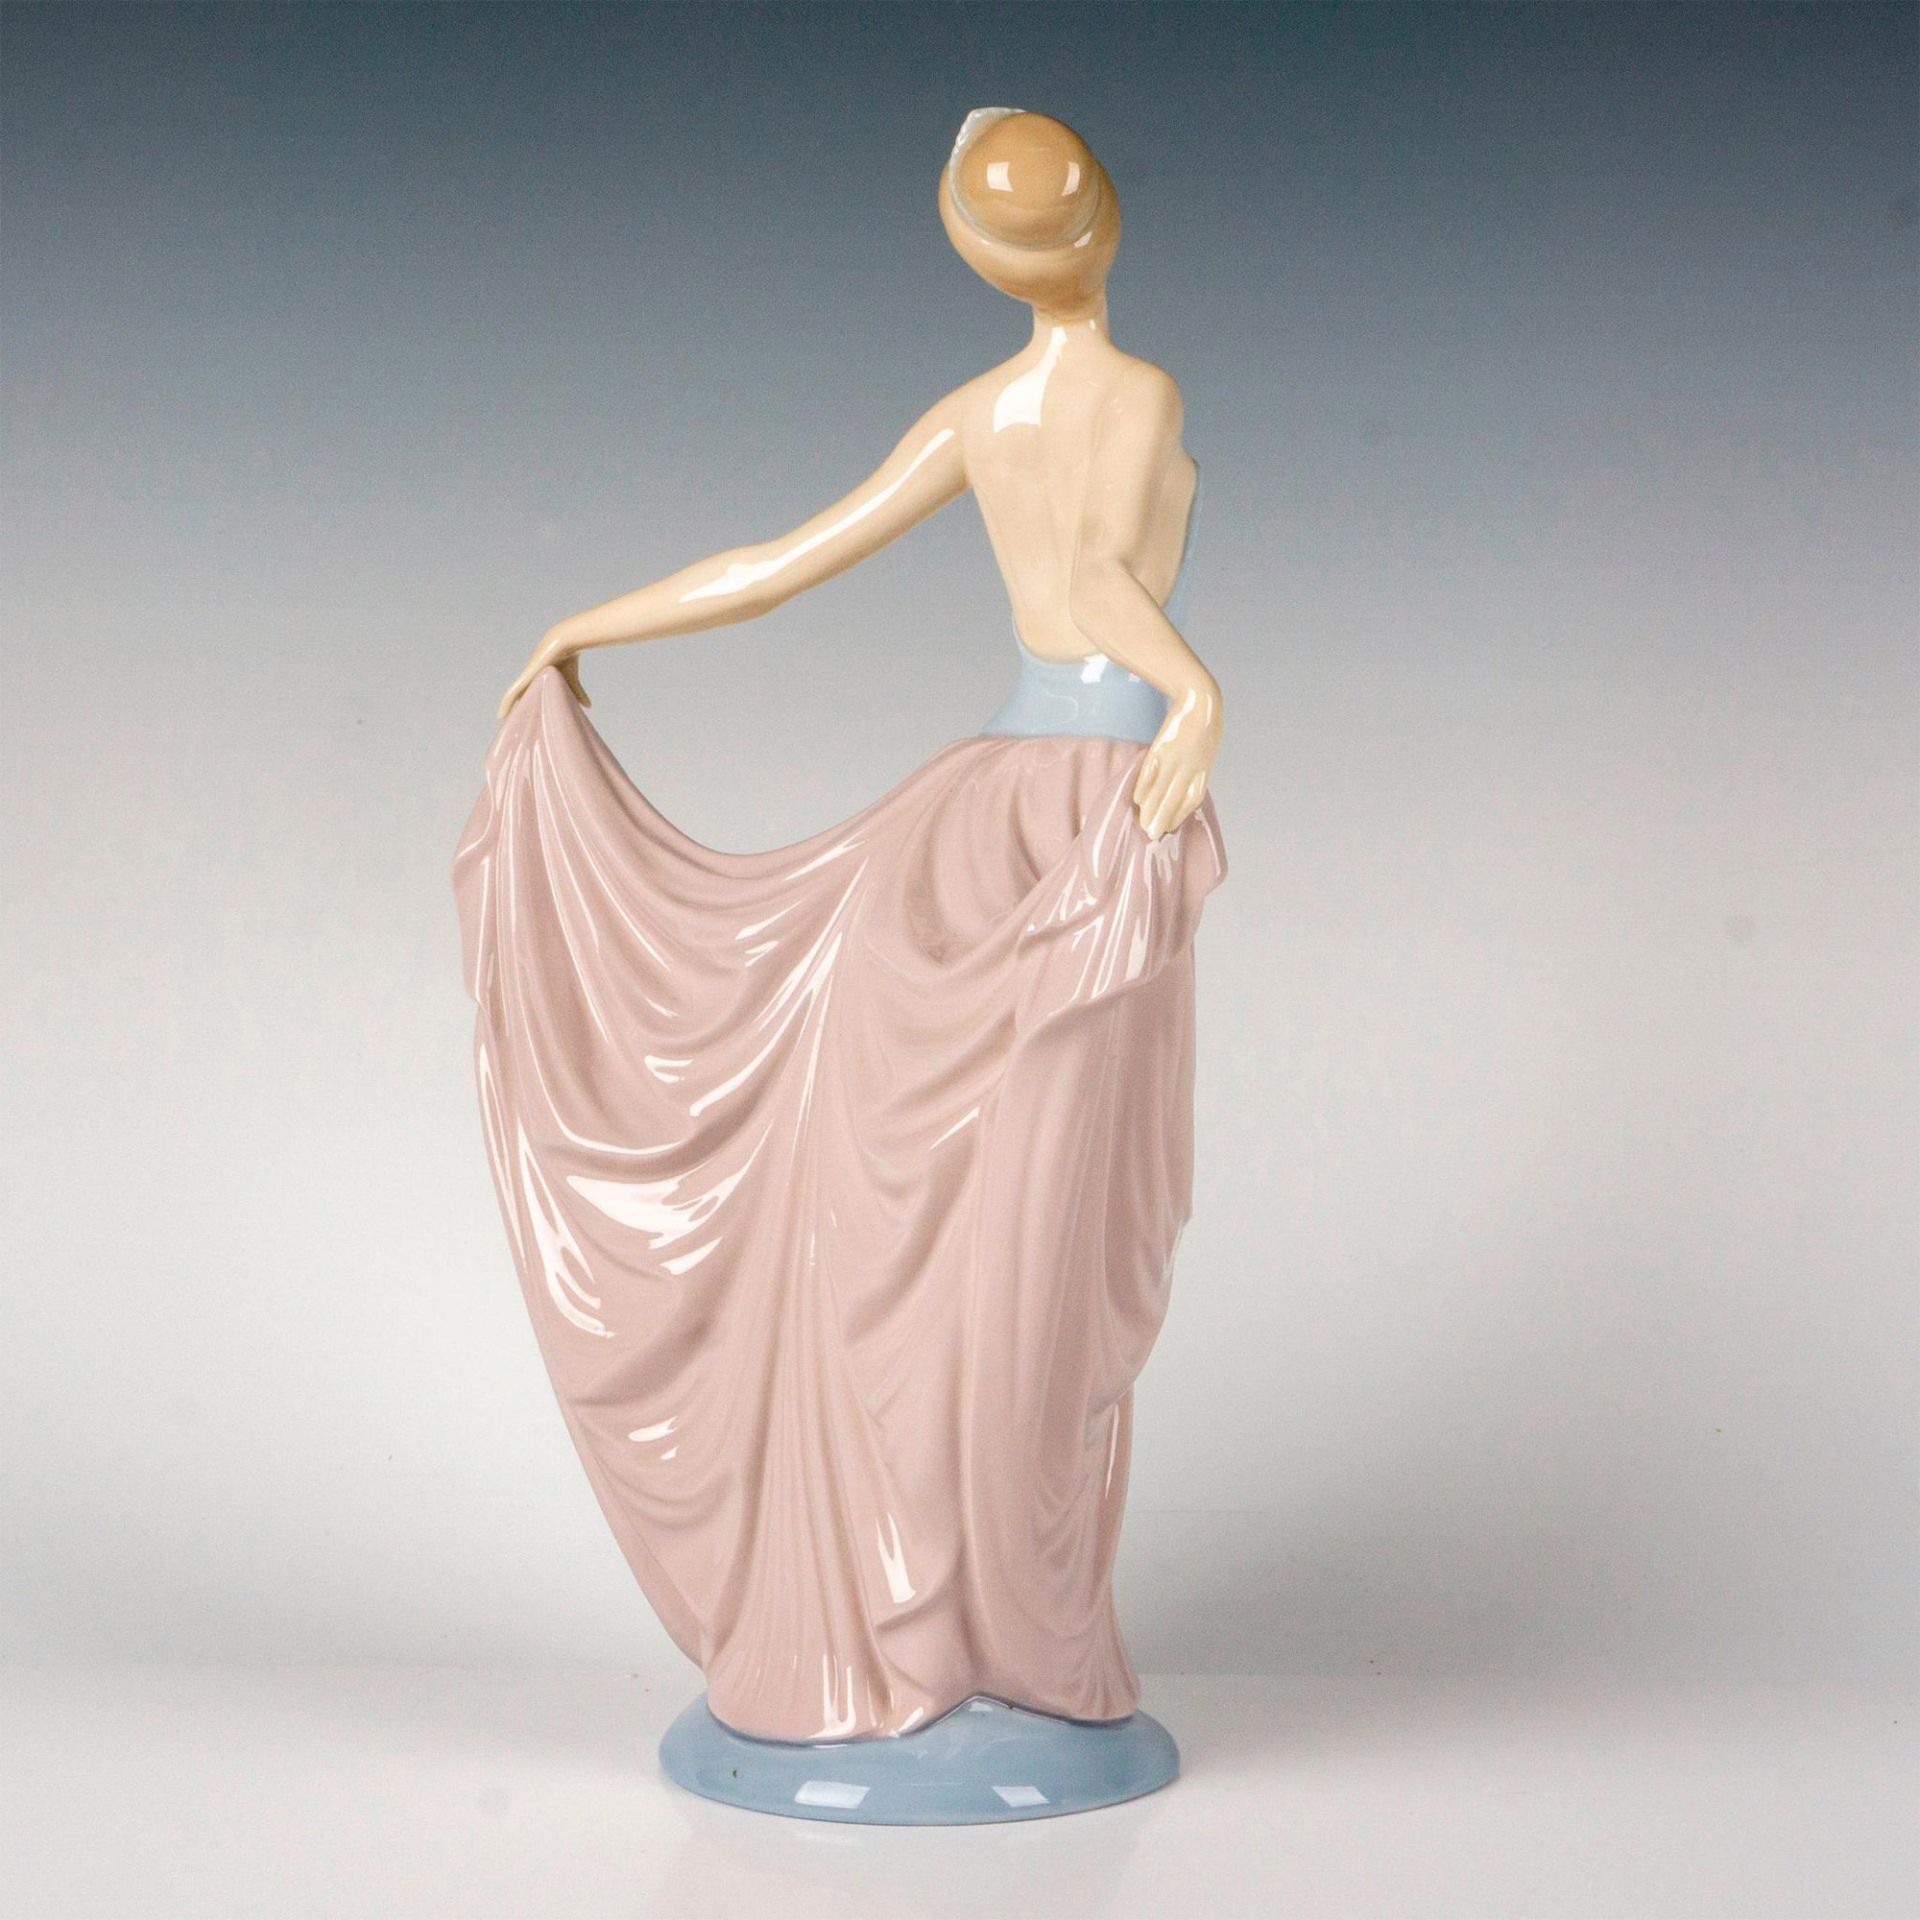 Dancer 1005050 - Lladro Porcelain Figurine - Image 2 of 3